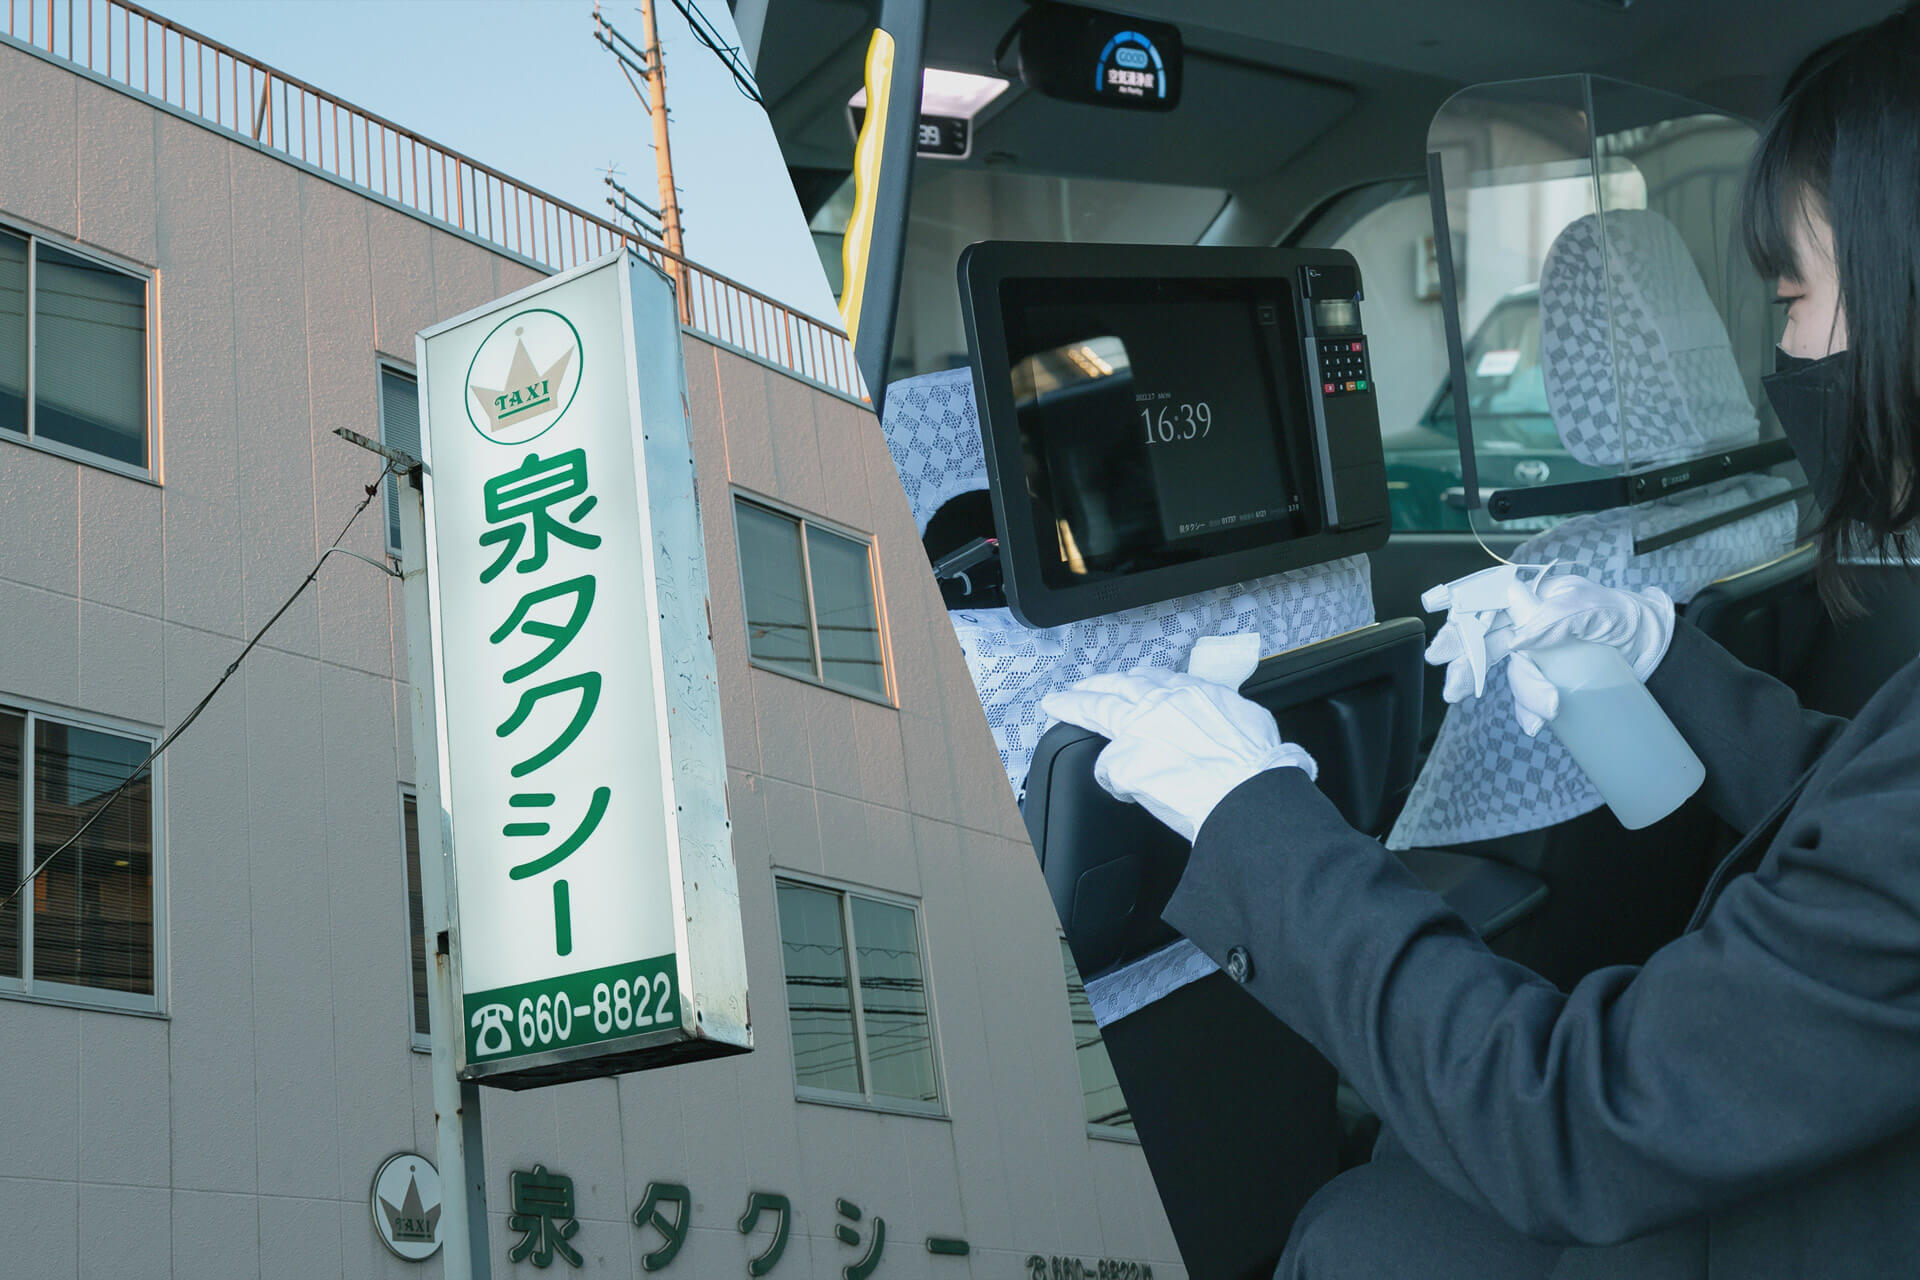 泉タクシー看板と車内を清掃するスタッフ